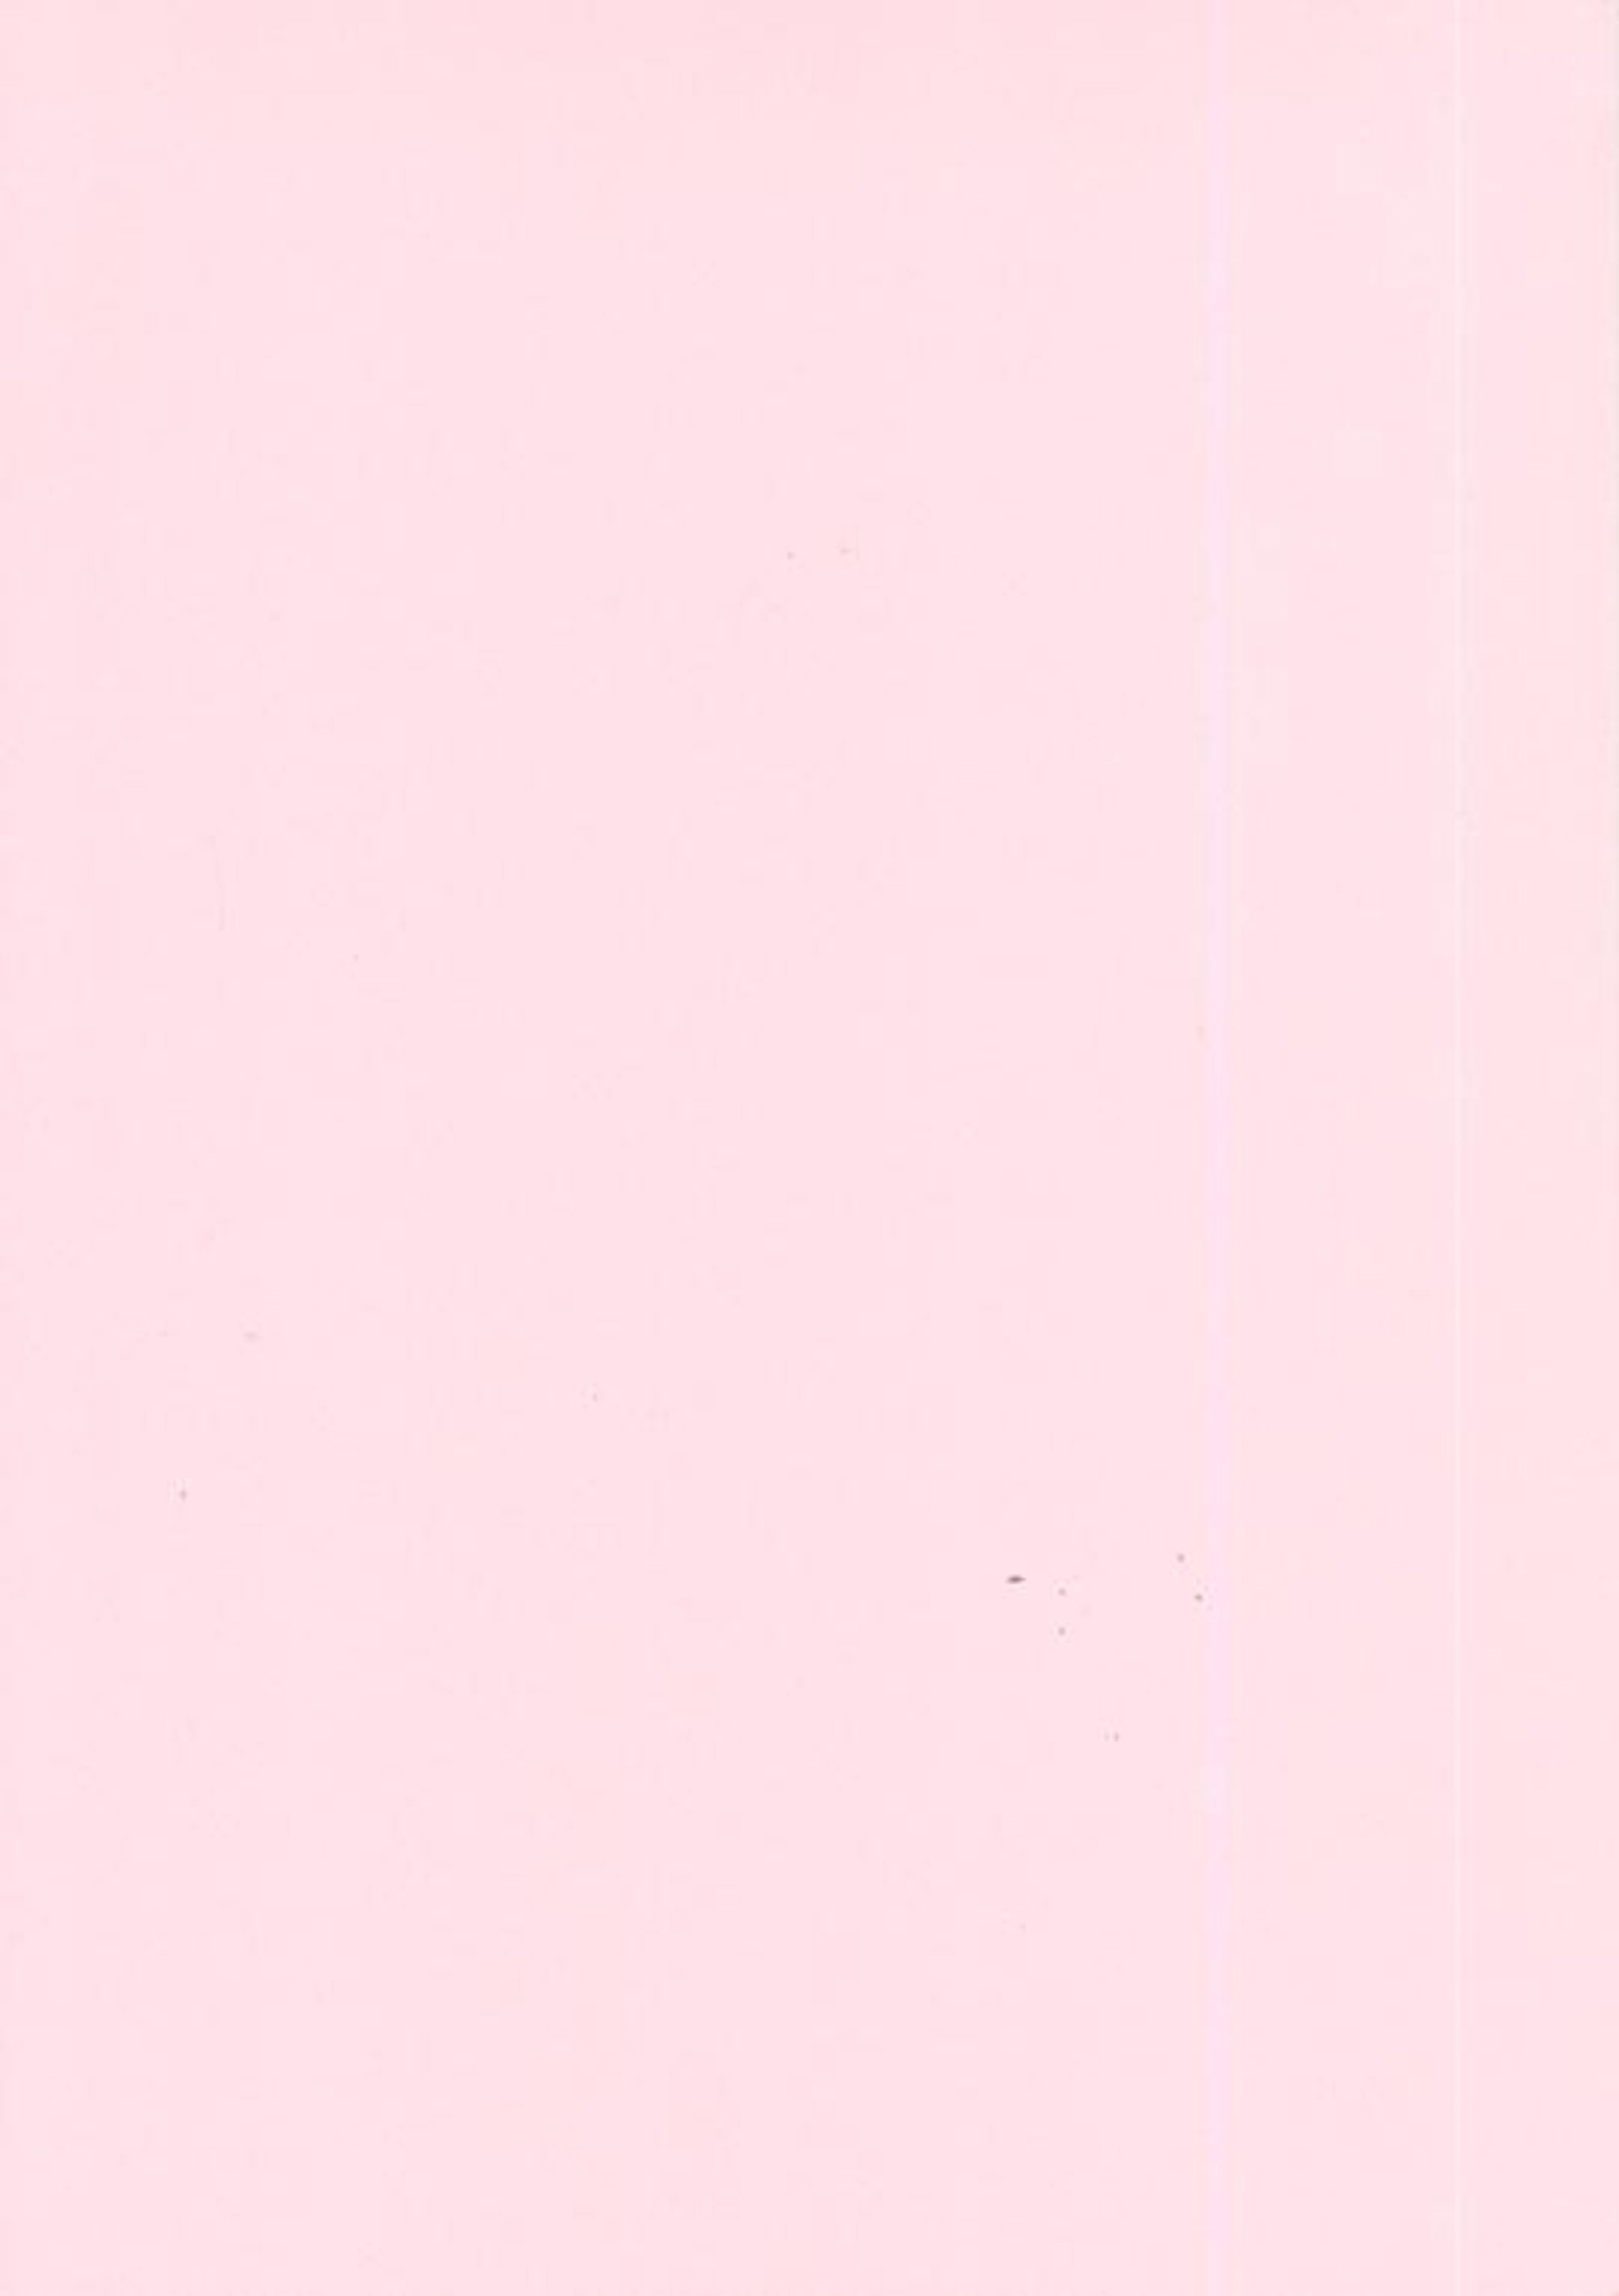 Foundation Cardstock  25 shts 220 gsm - Pink